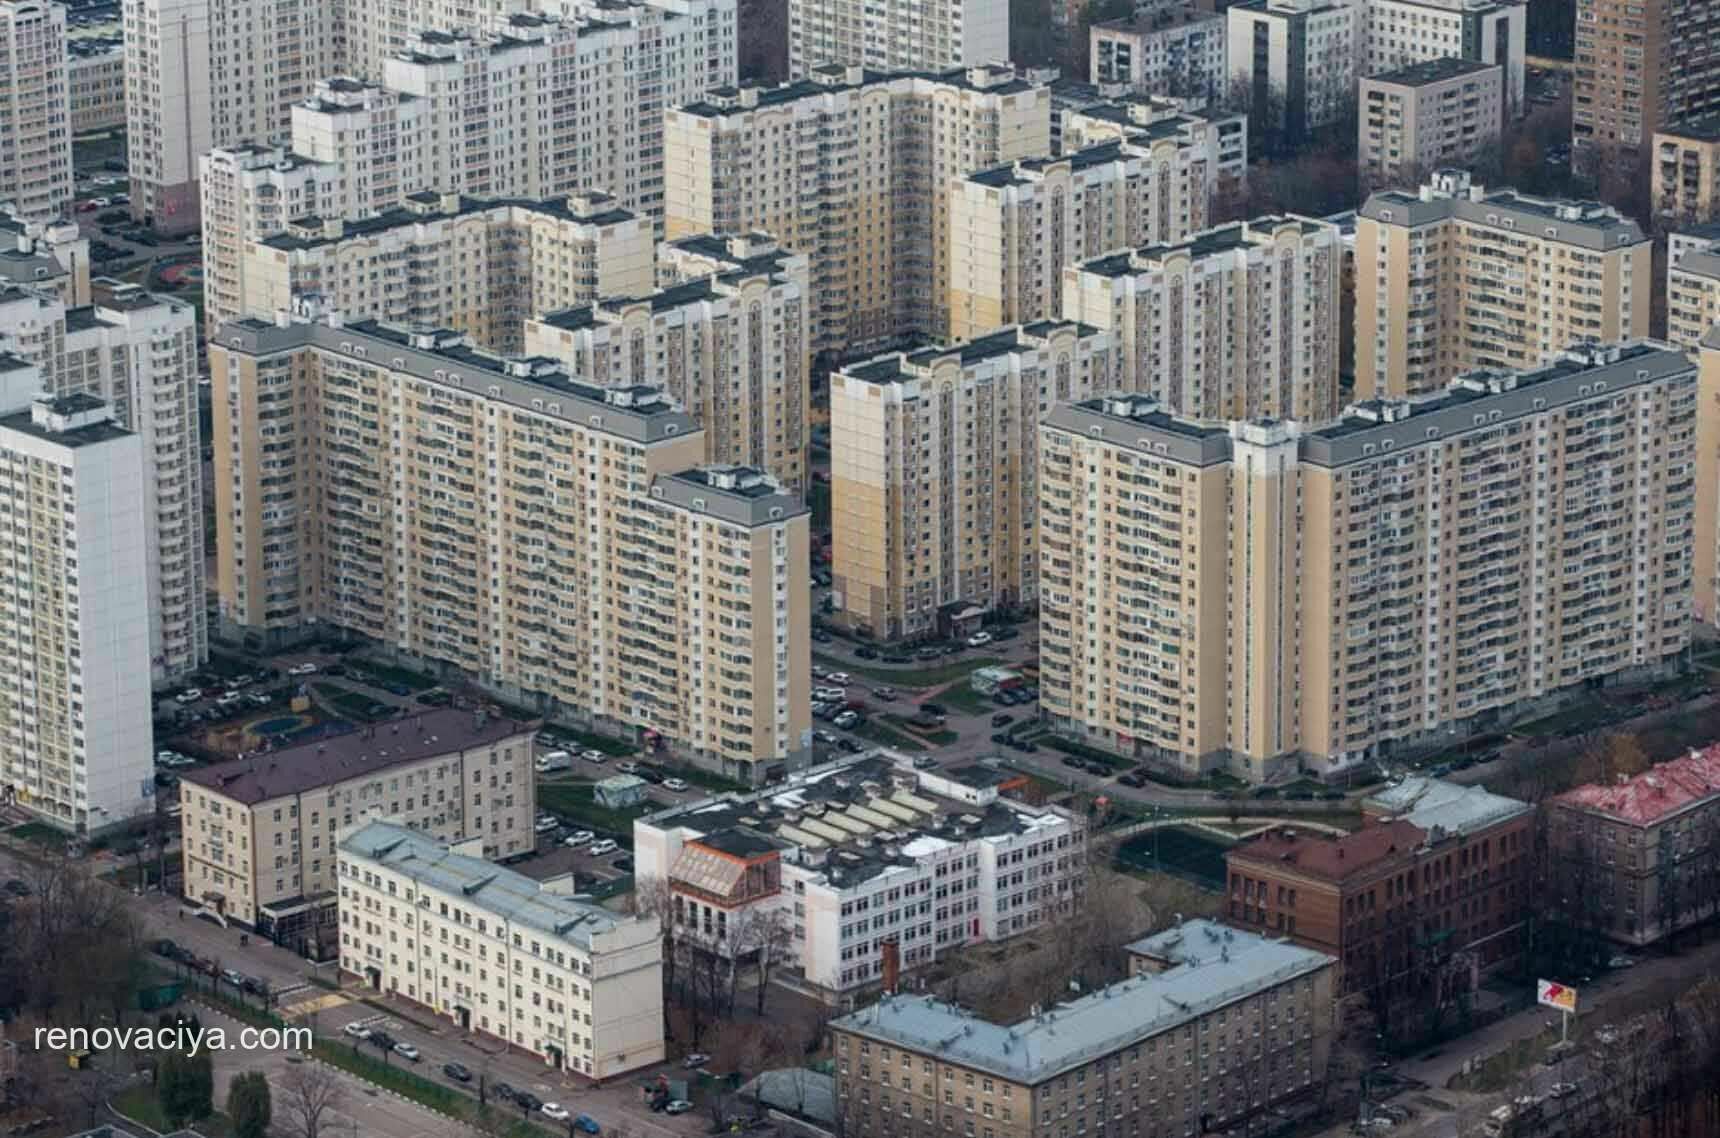 Недвижимость в Москве дорожает мировыми темпами